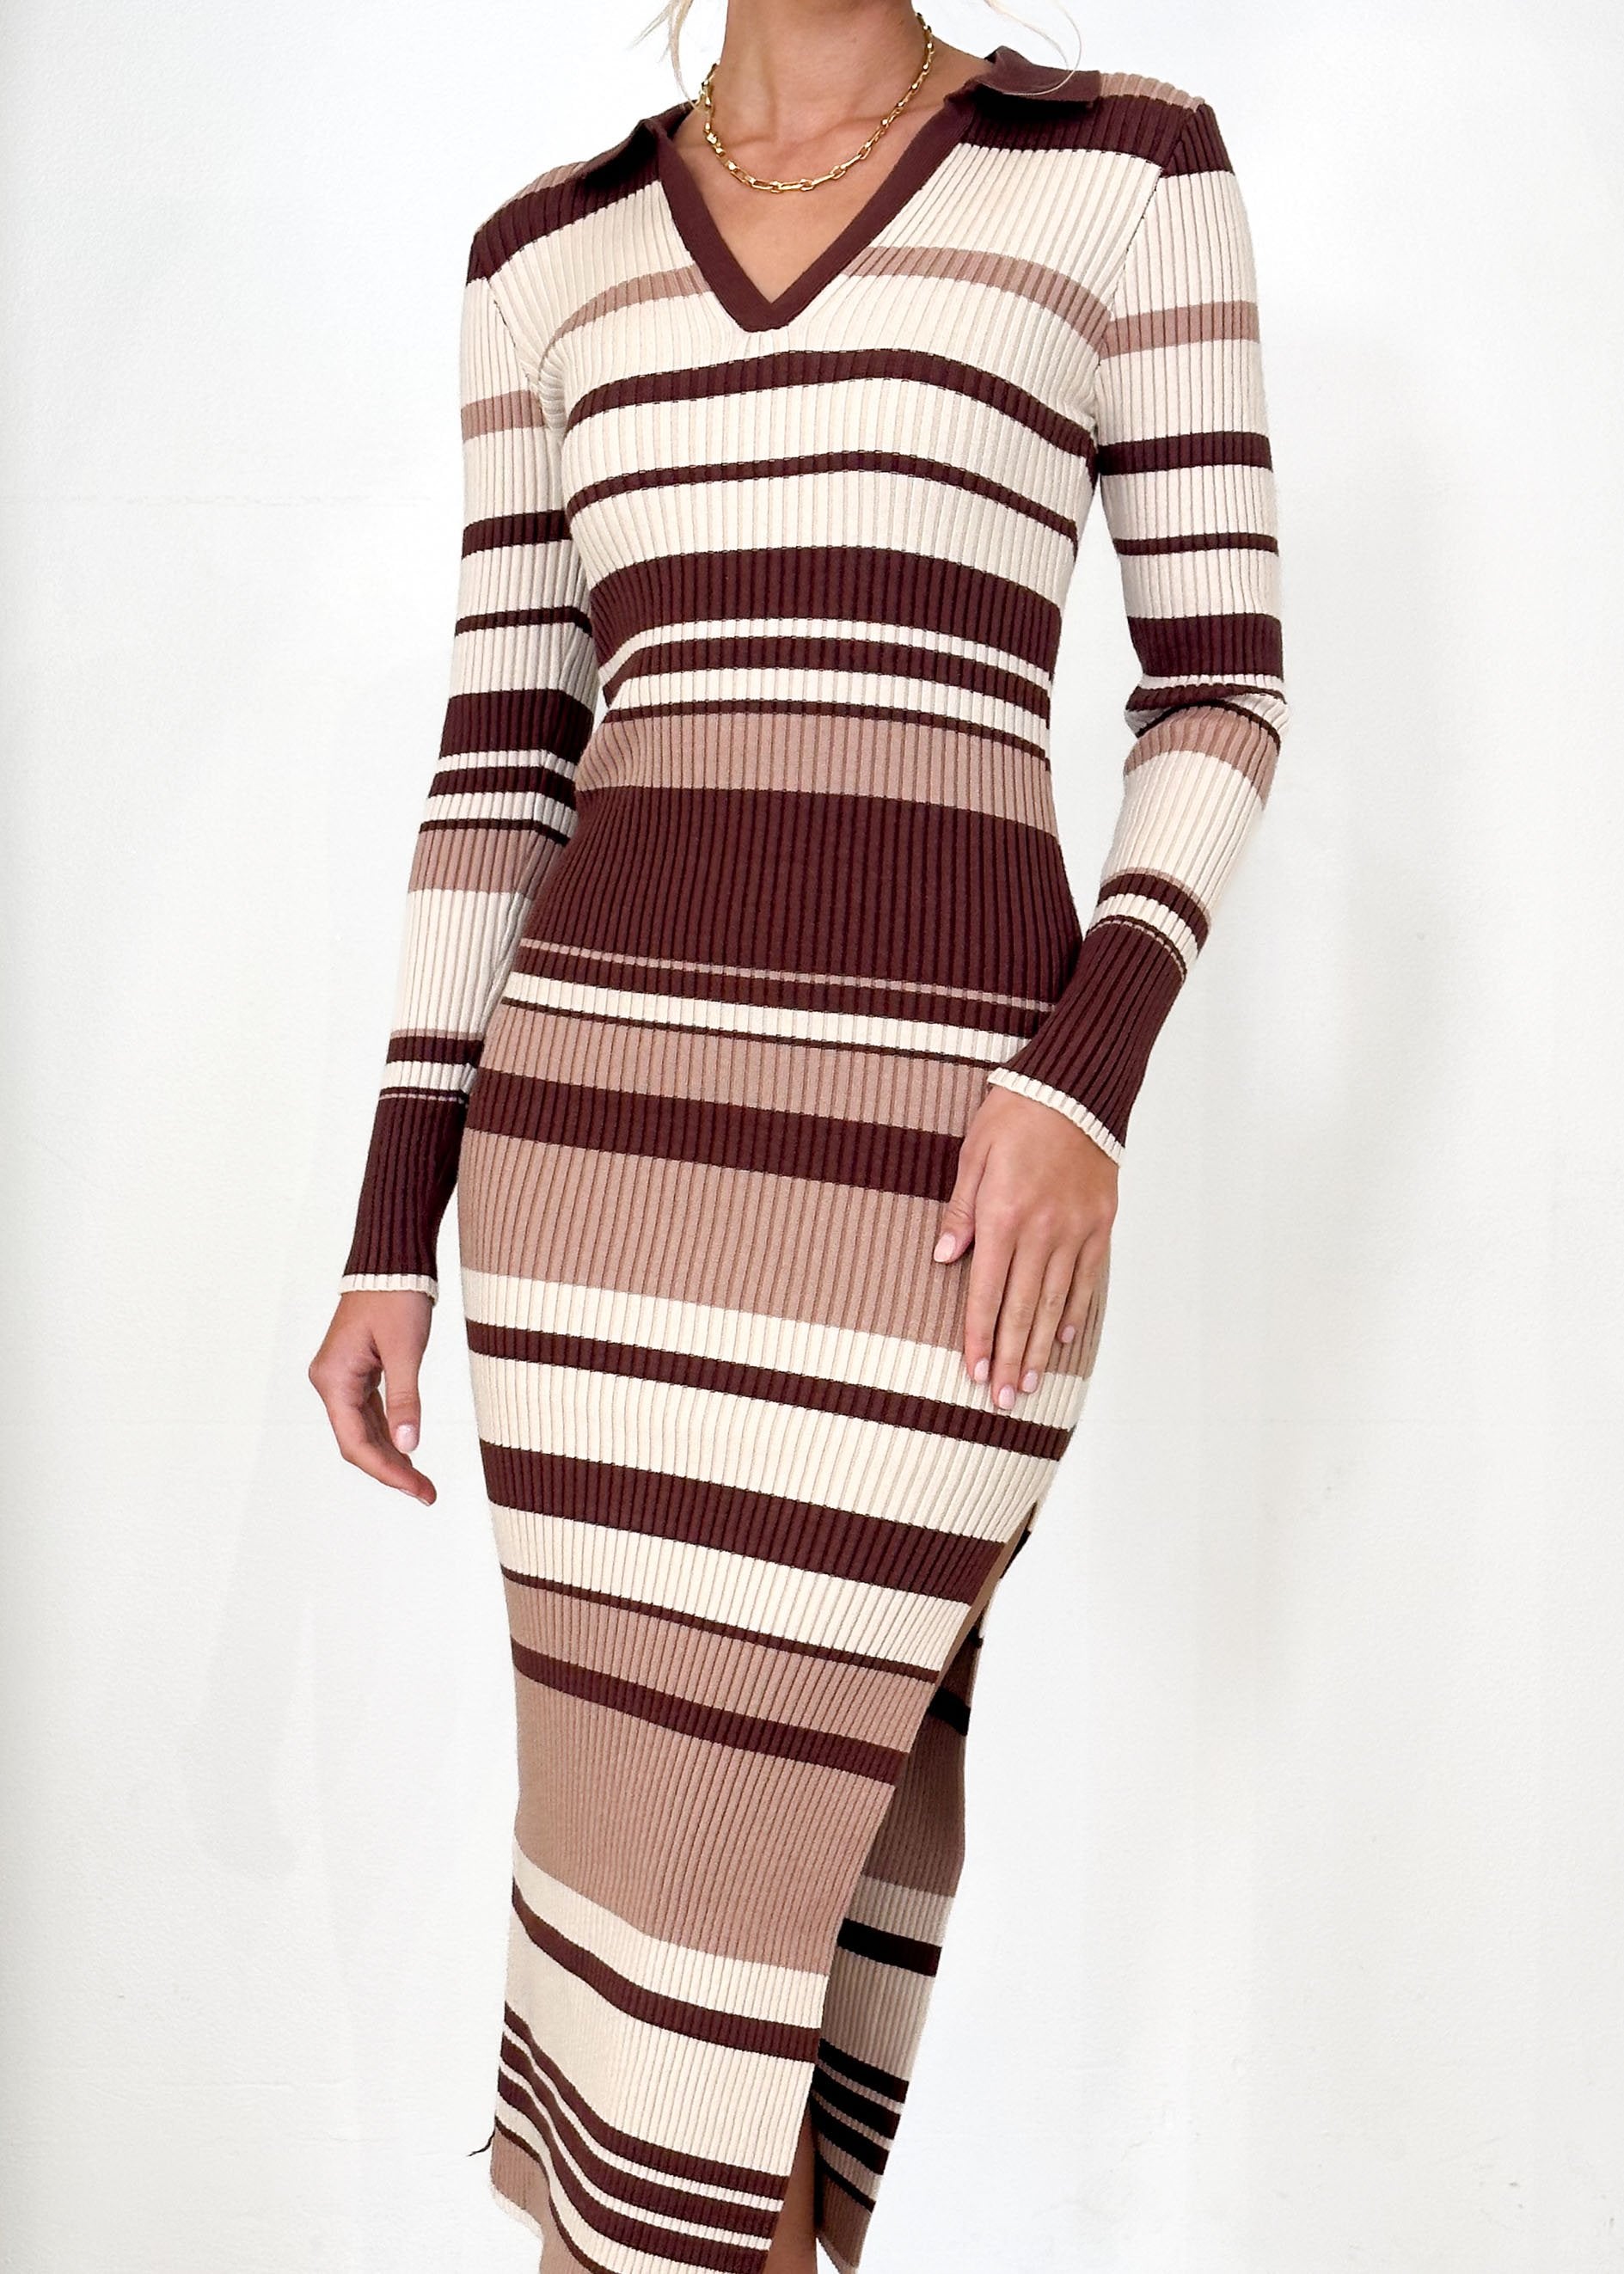 Libbey Knit Midi Dress - Chocolate Stripe